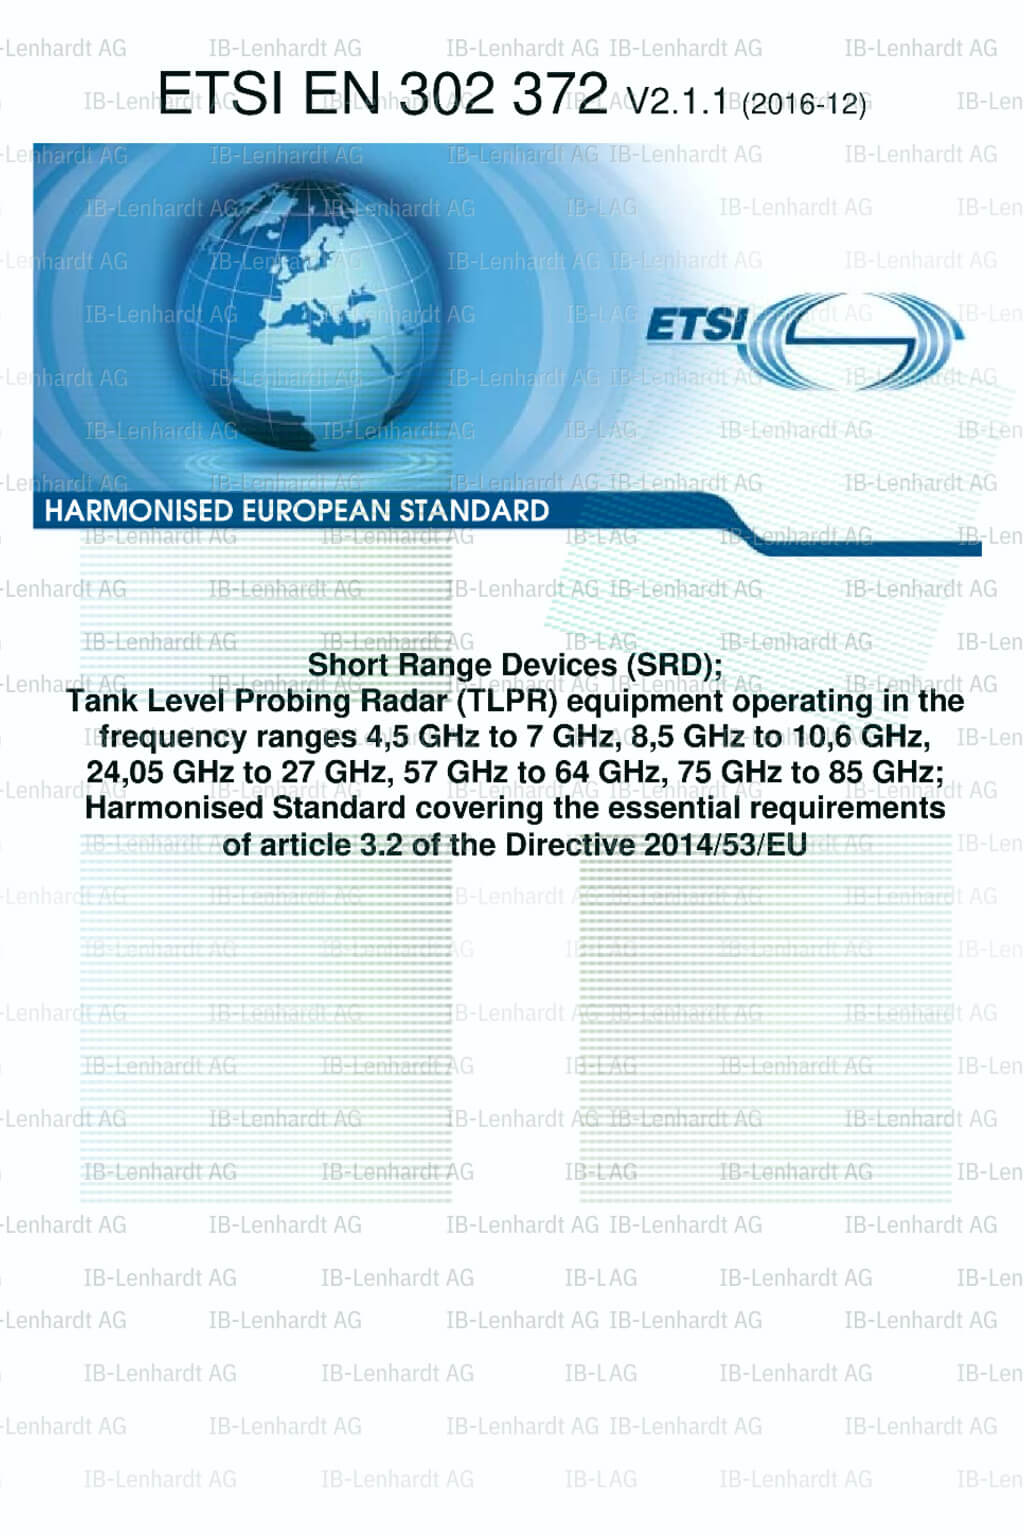 ETSI EN 302 372 V2.1.1